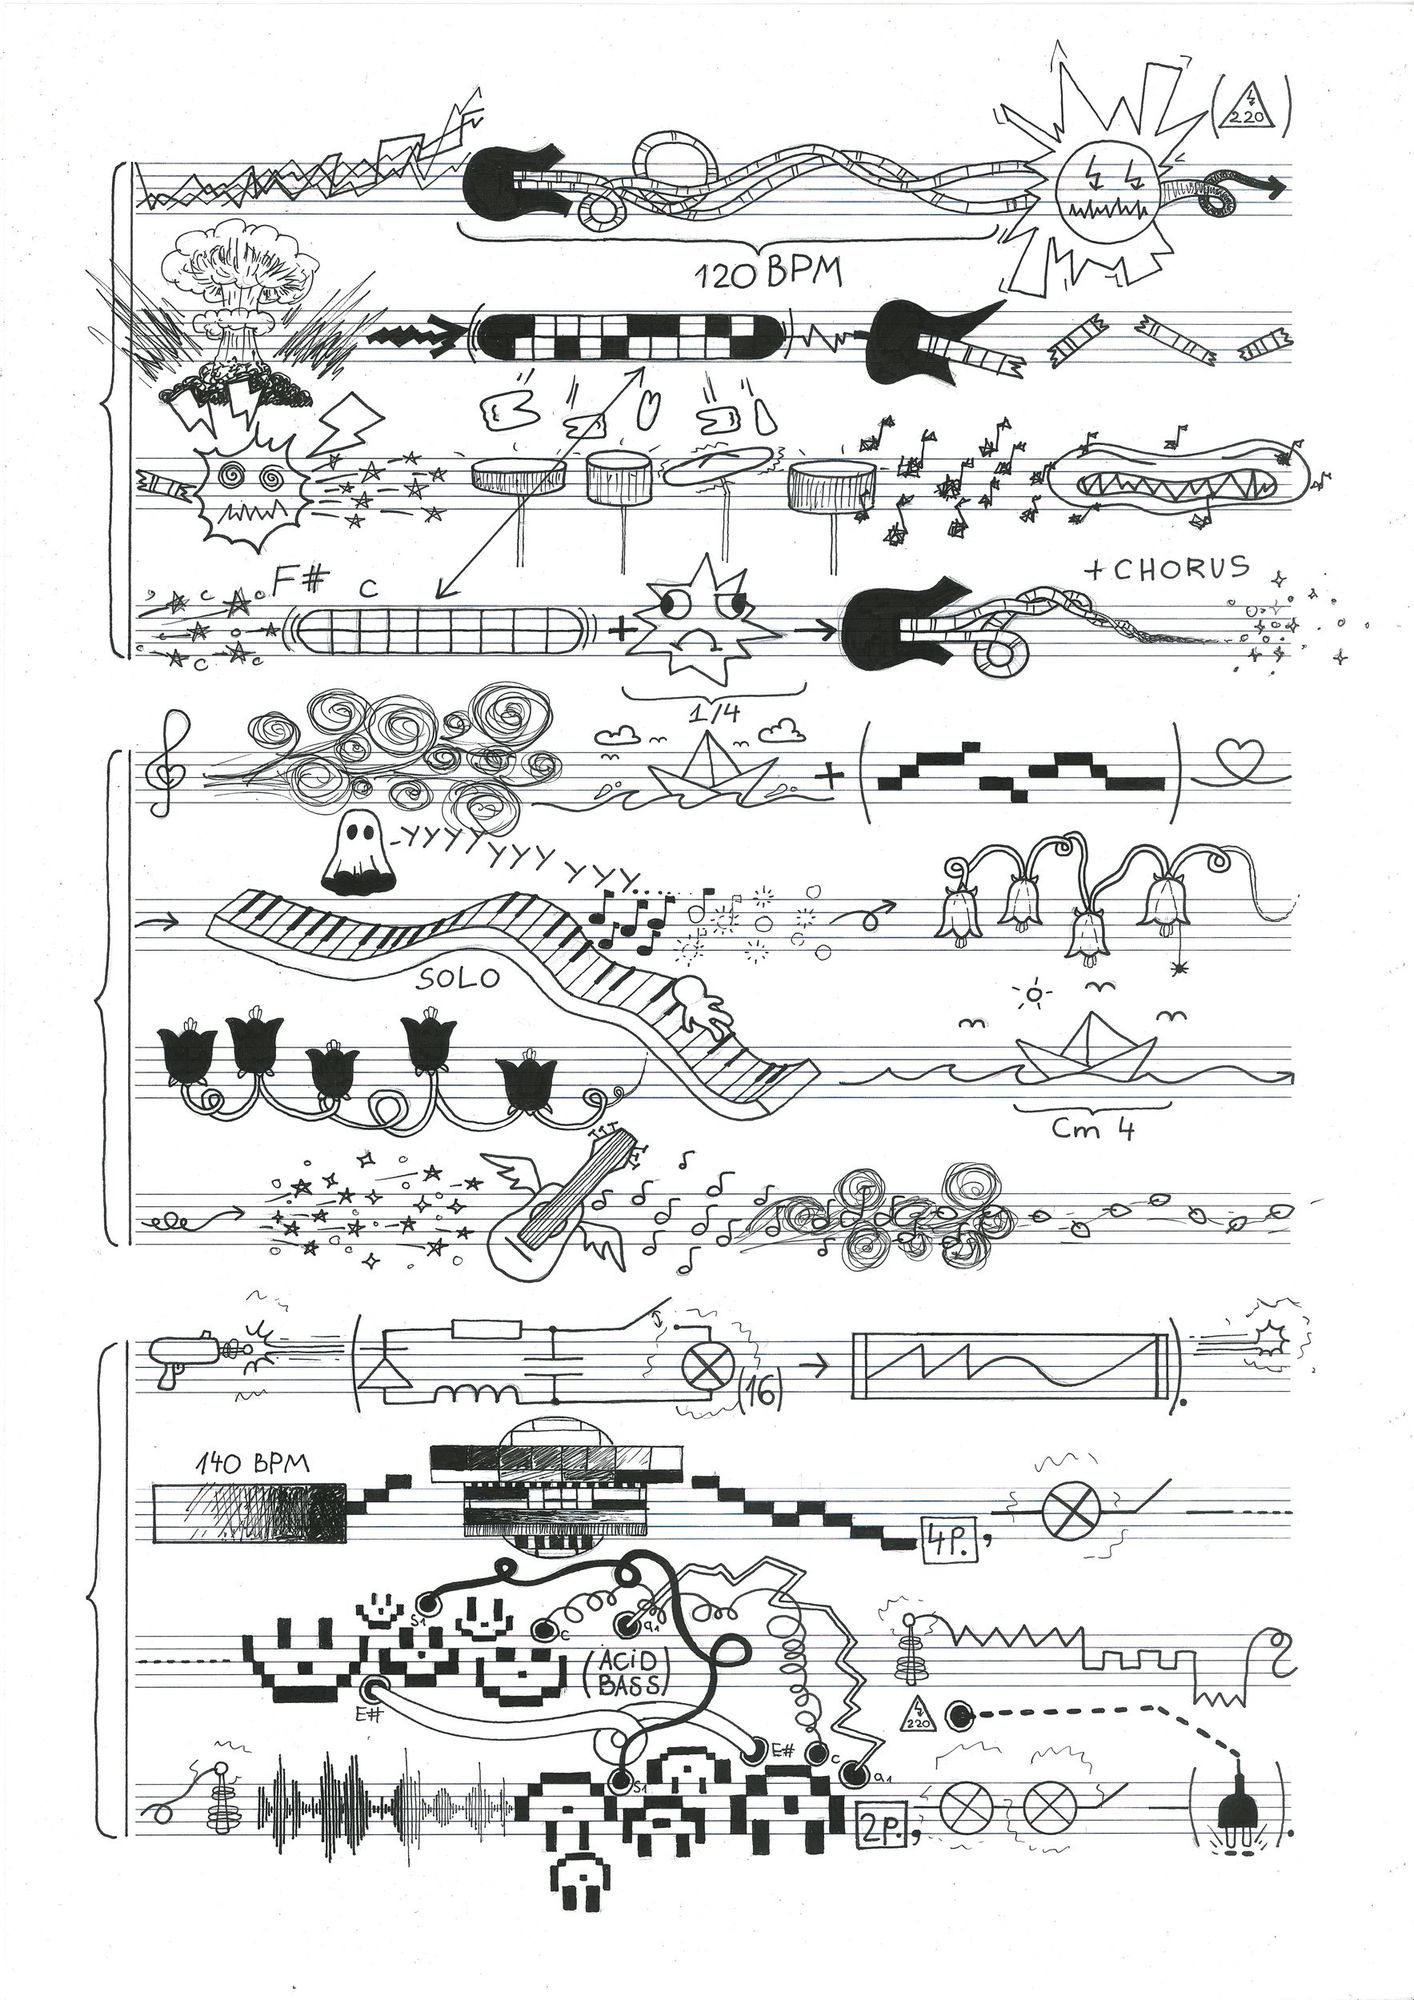 Лист с разлиновкой нотного стана, поверх которого нарисованы рисунки: электрогитары, приведения, цветочки, смайлики